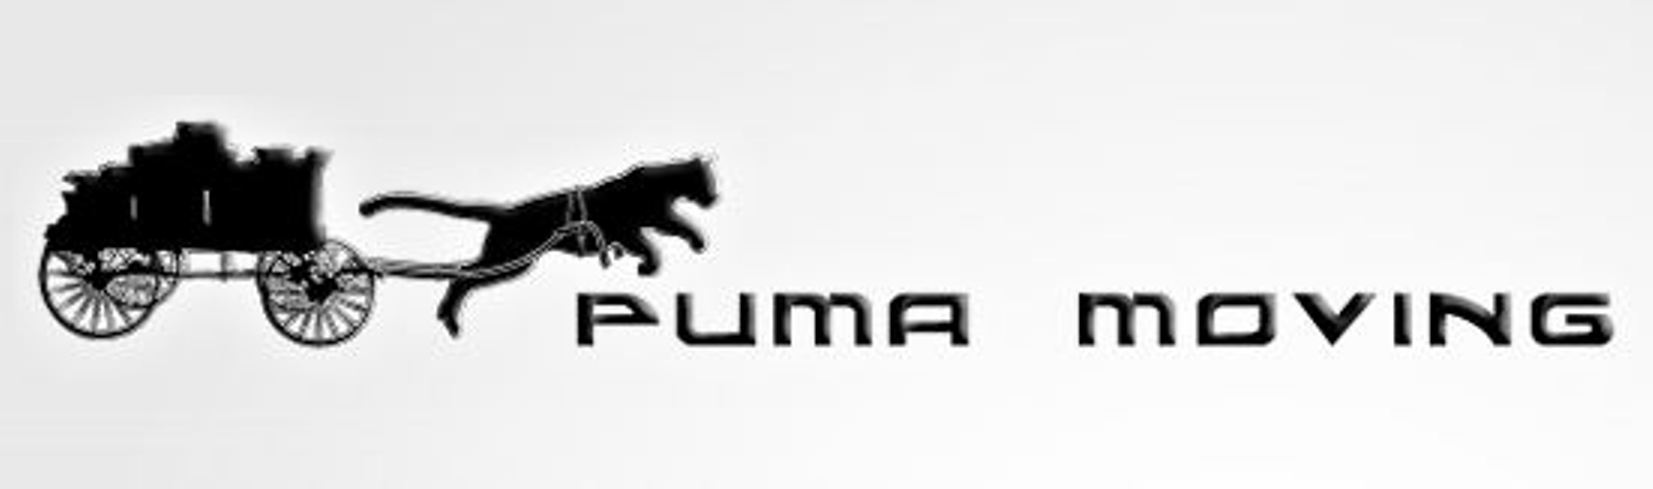 profile of puma company